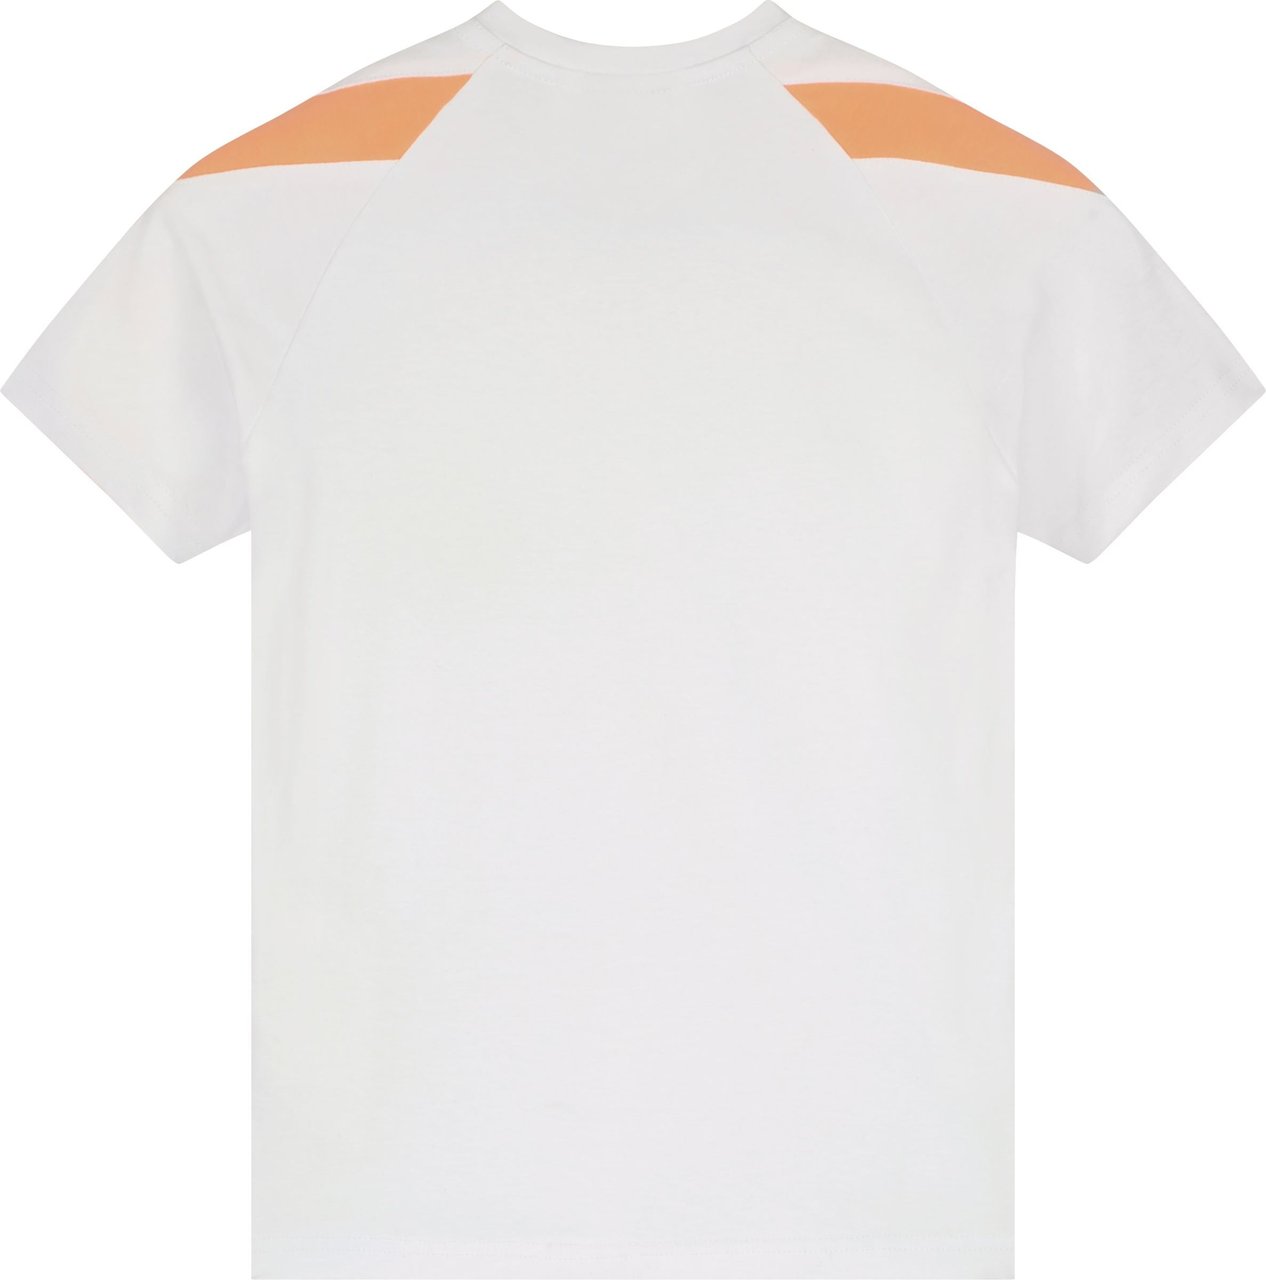 Malelions Pre-Match T-Shirt - Salmon/White Roze